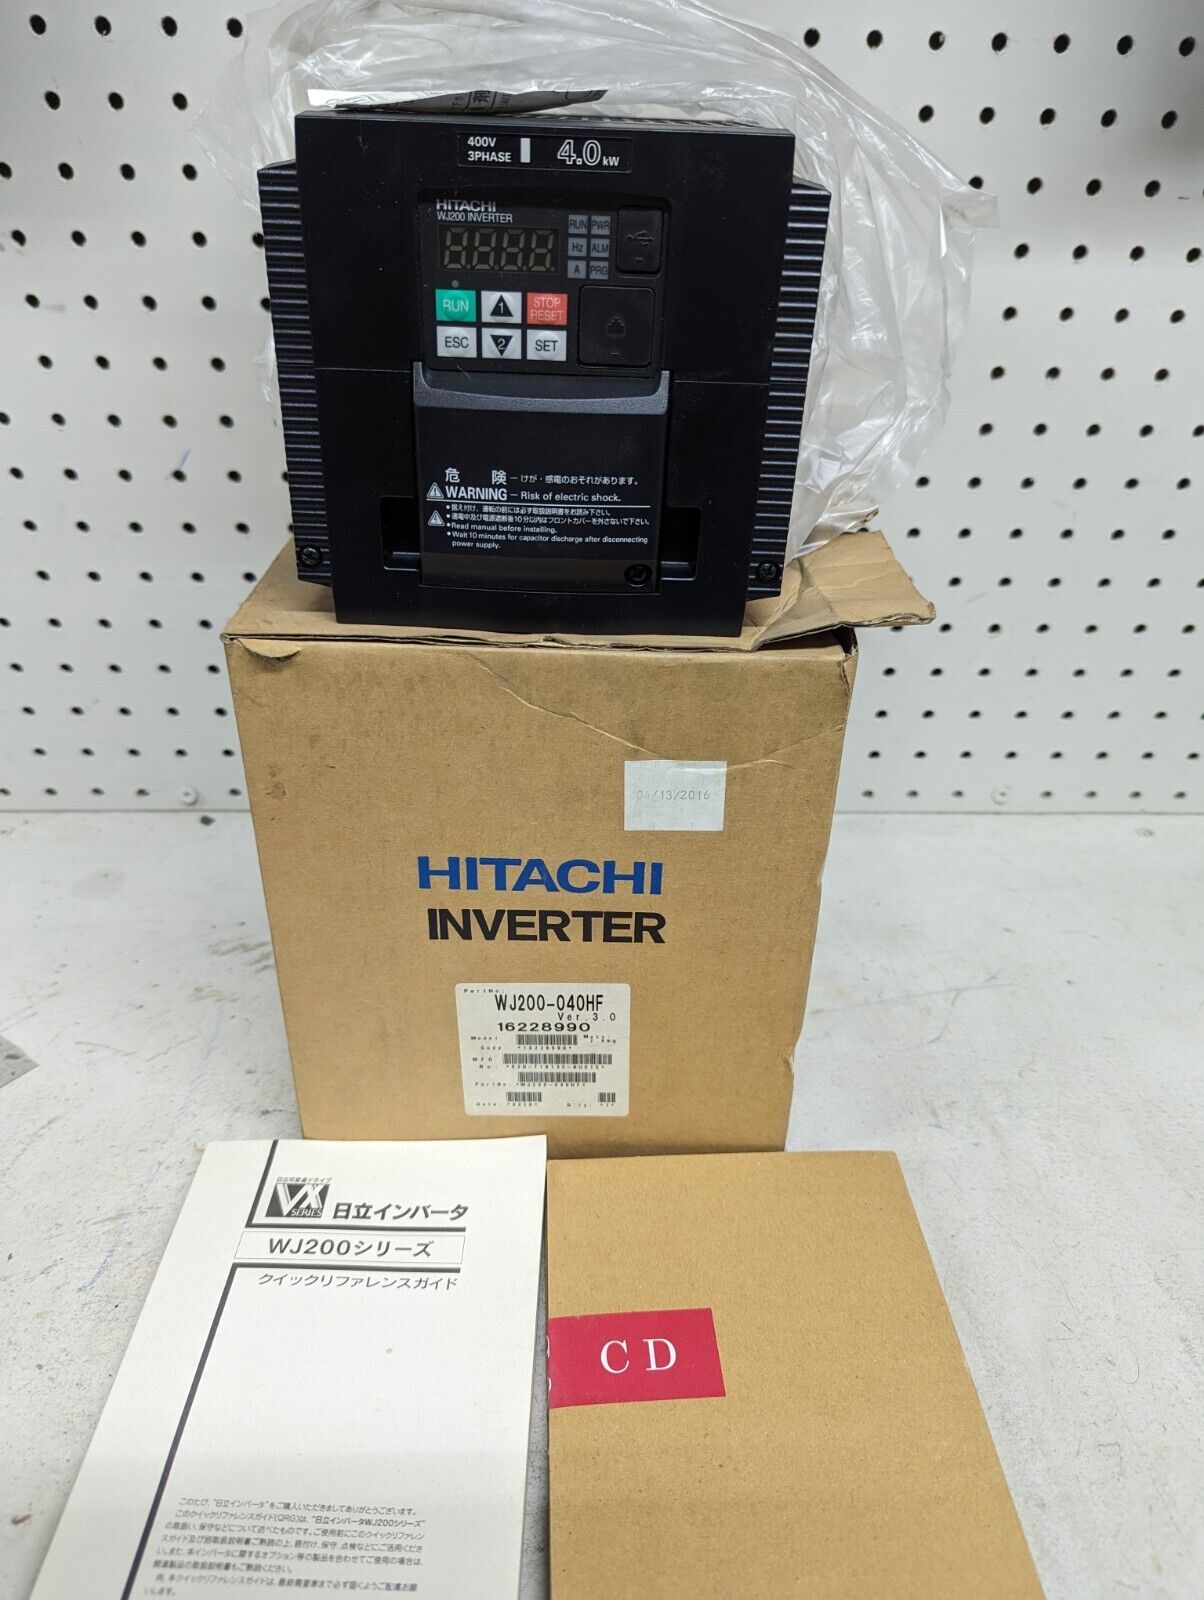 Hitachi WJ200-040HF Inverter, 380-480V, 5CT(7.5VT)HP, 3PH, 9.2CT(11.1VT)A